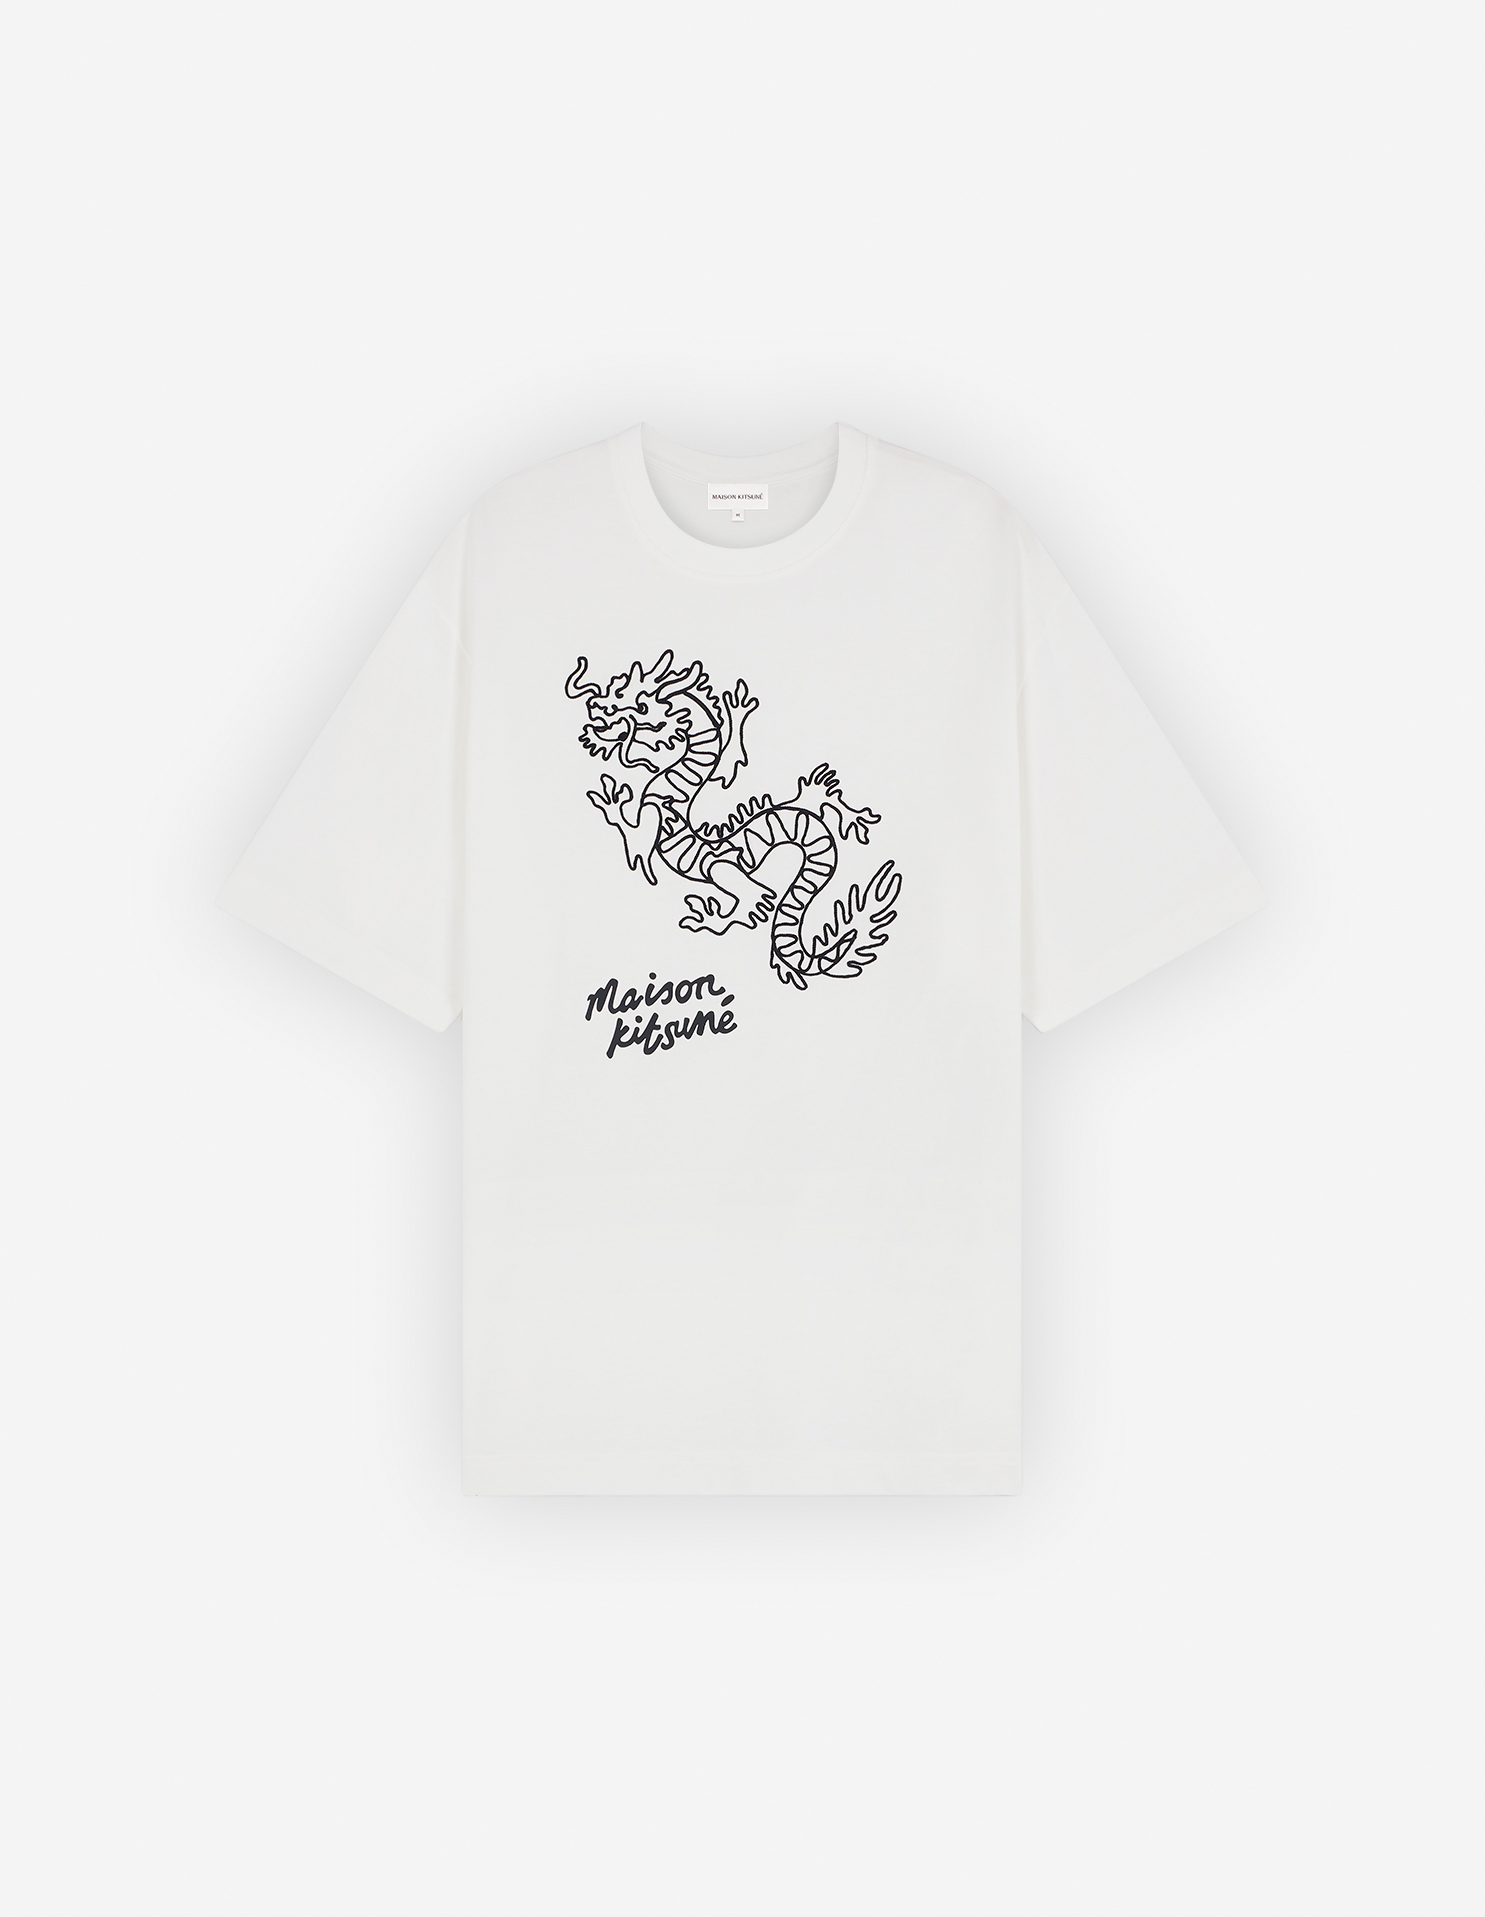 ‘차이니즈 드래곤’ 오버사이즈 티셔츠